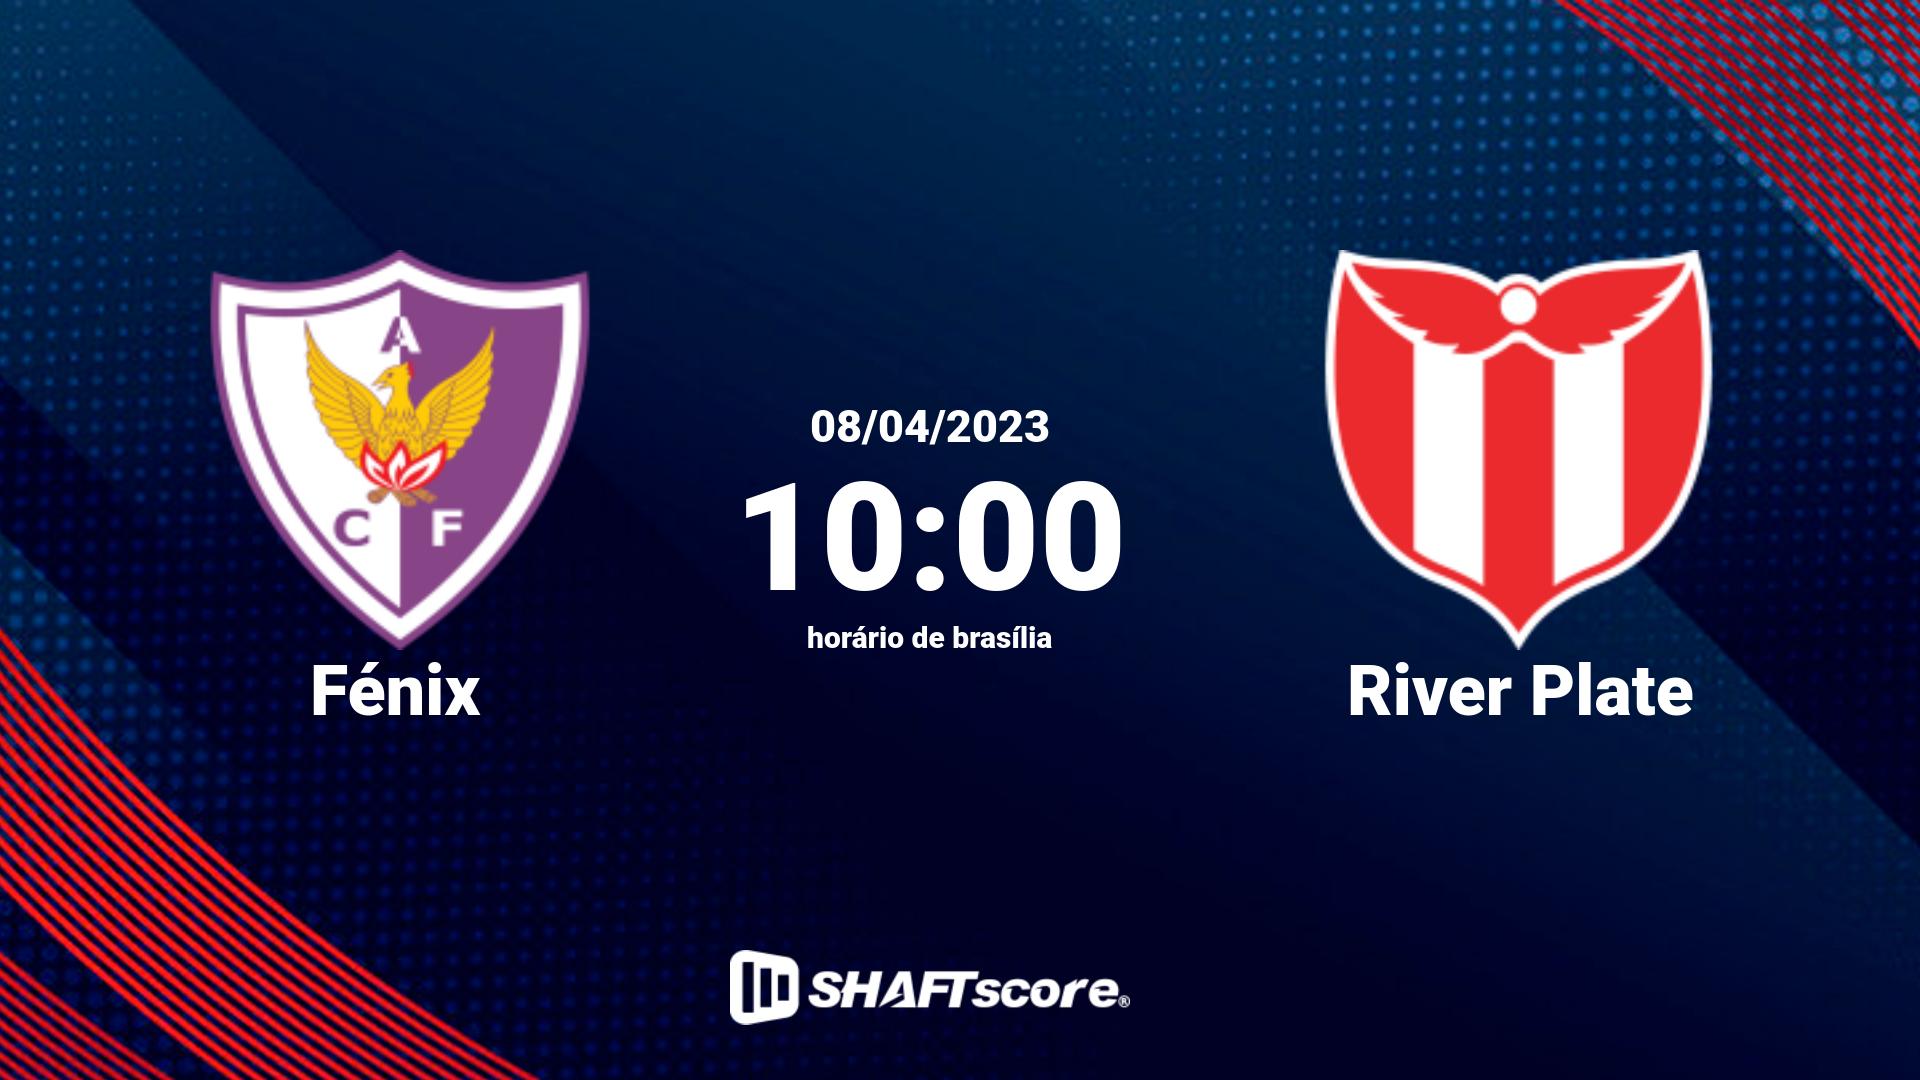 Estatísticas do jogo Fénix vs River Plate 08.04 10:00